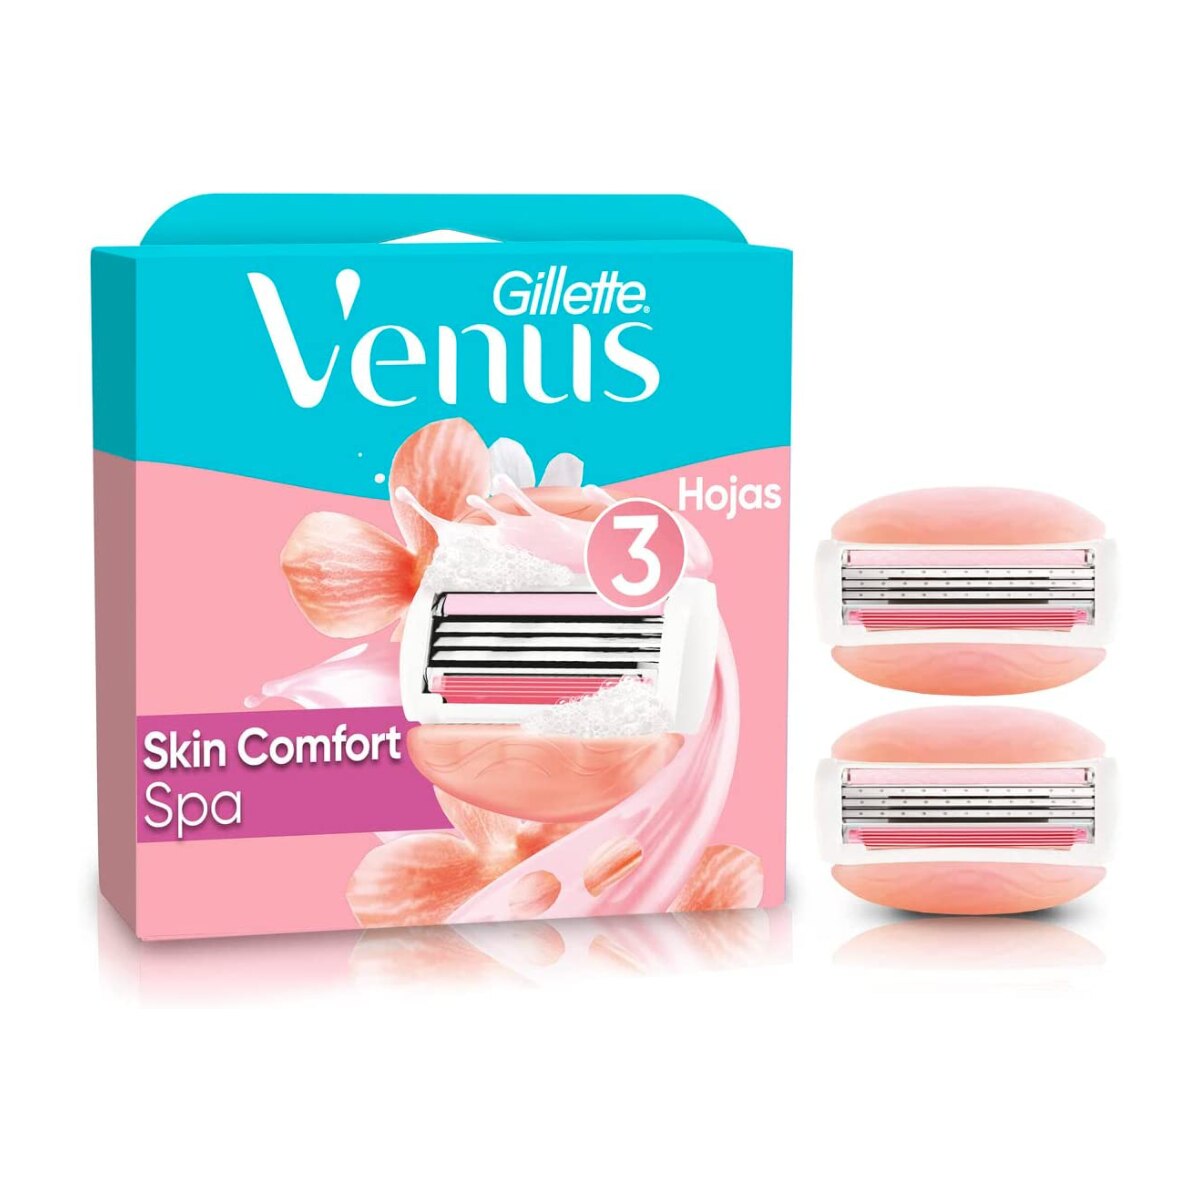 Carga Gillette Venus Skin Comfort Spa 2 Unidades